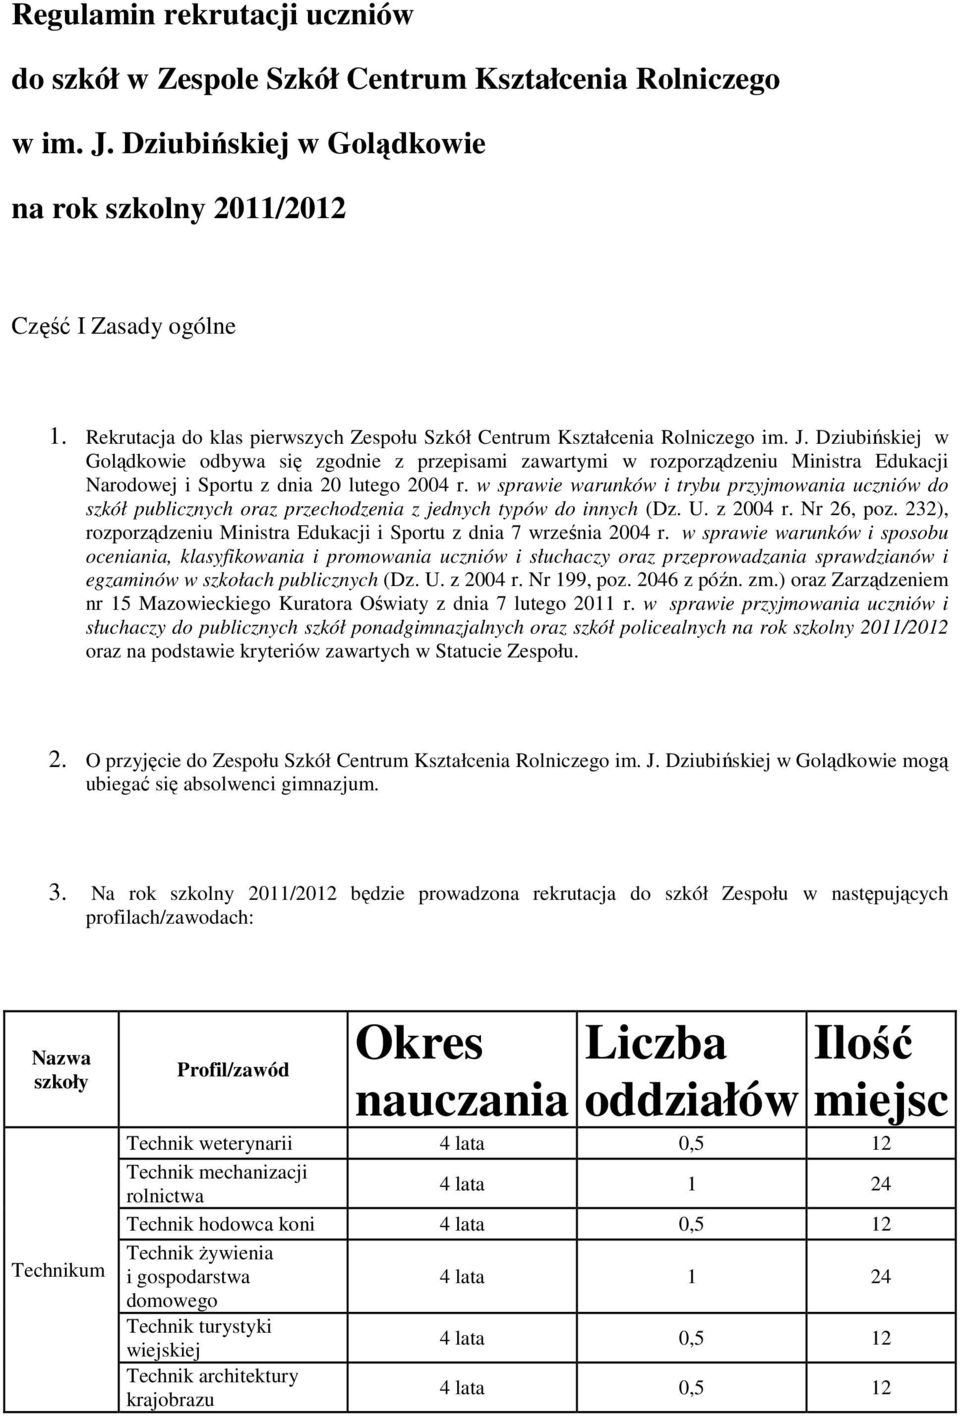 Dziubińskiej w Golądkowie odbywa się zgodnie z przepisami zawartymi w rozporządzeniu Ministra Edukacji Narodowej i Sportu z dnia 20 lutego 2004 r.